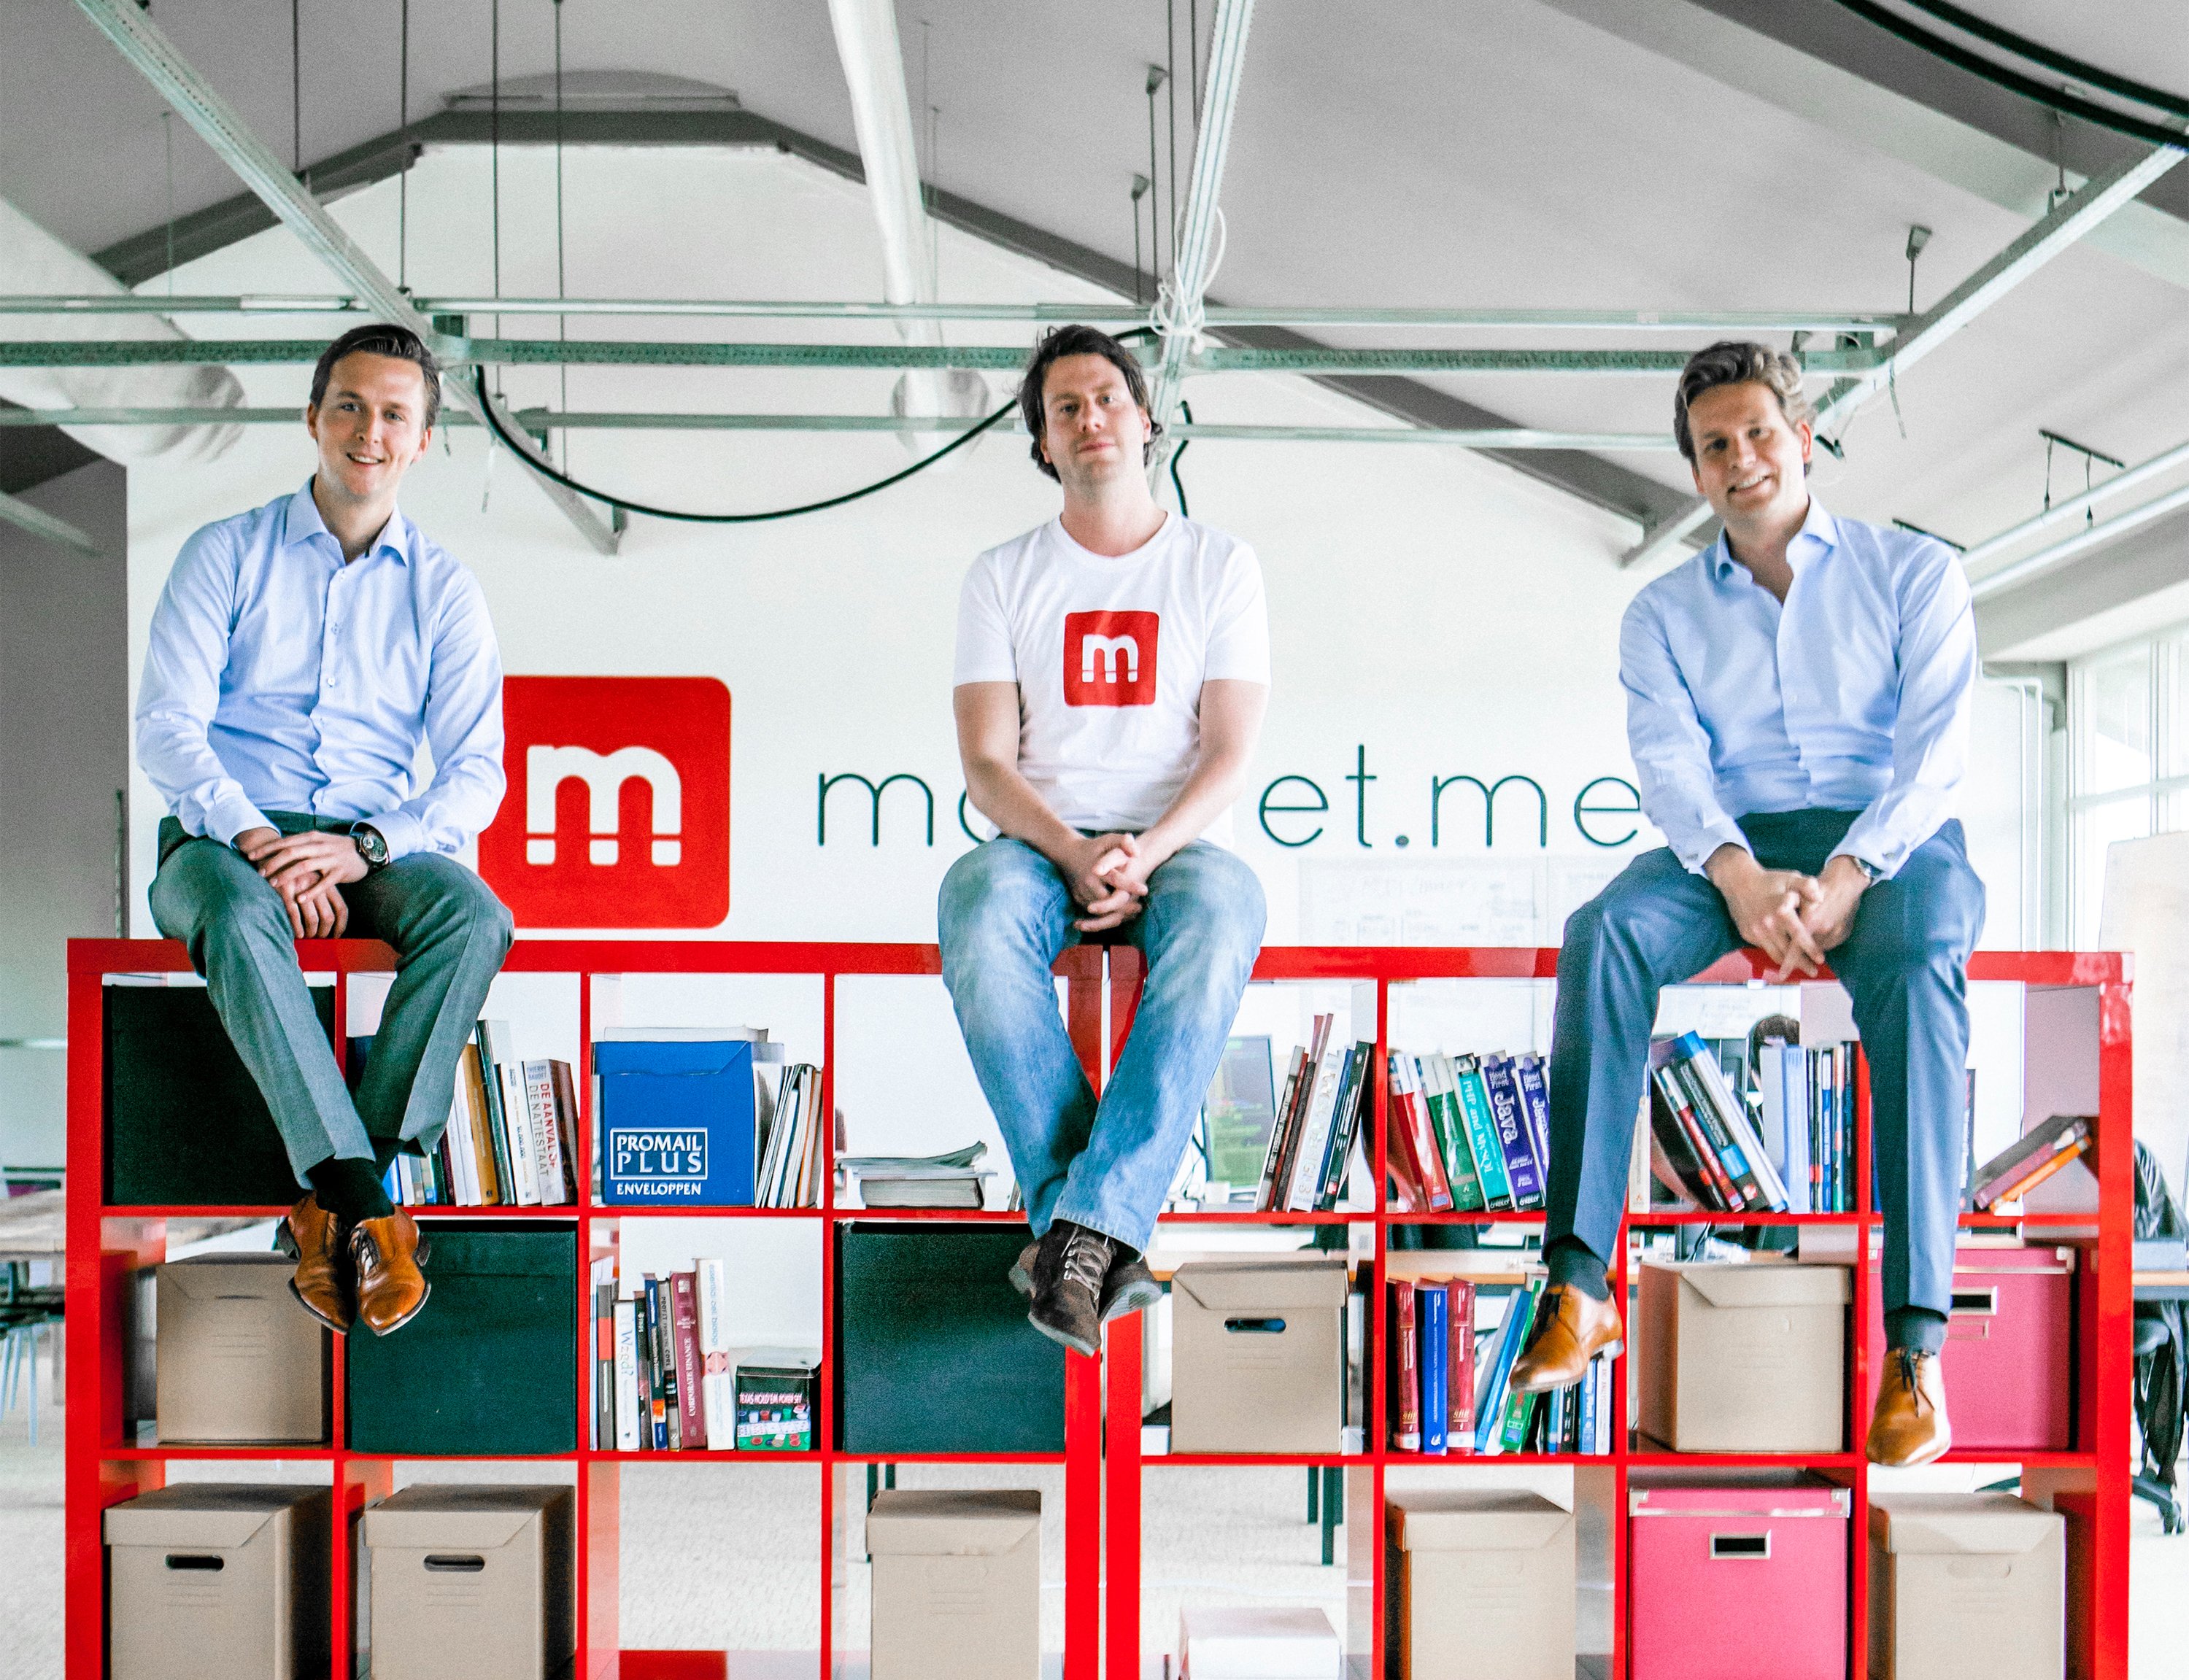 magnet.me startup oprichters investering brexit linkedin vacature vincent karremans